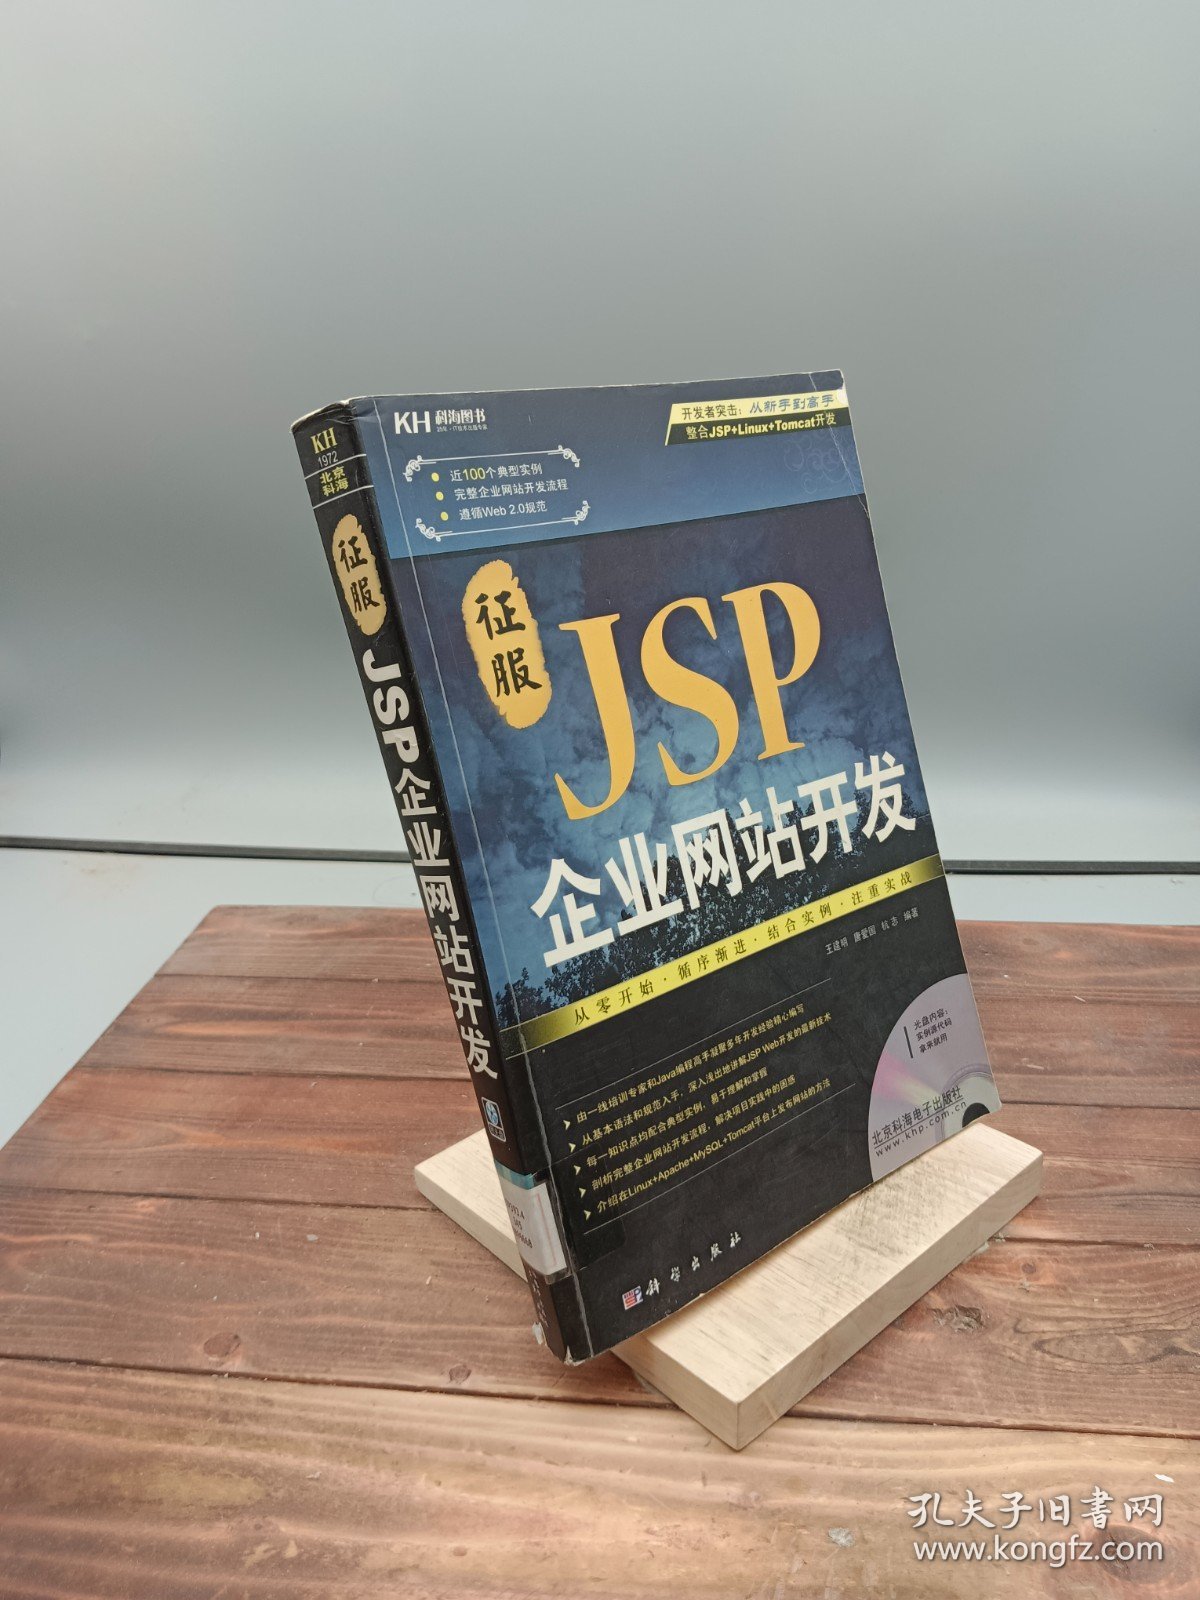 征服JSP企业网站开发